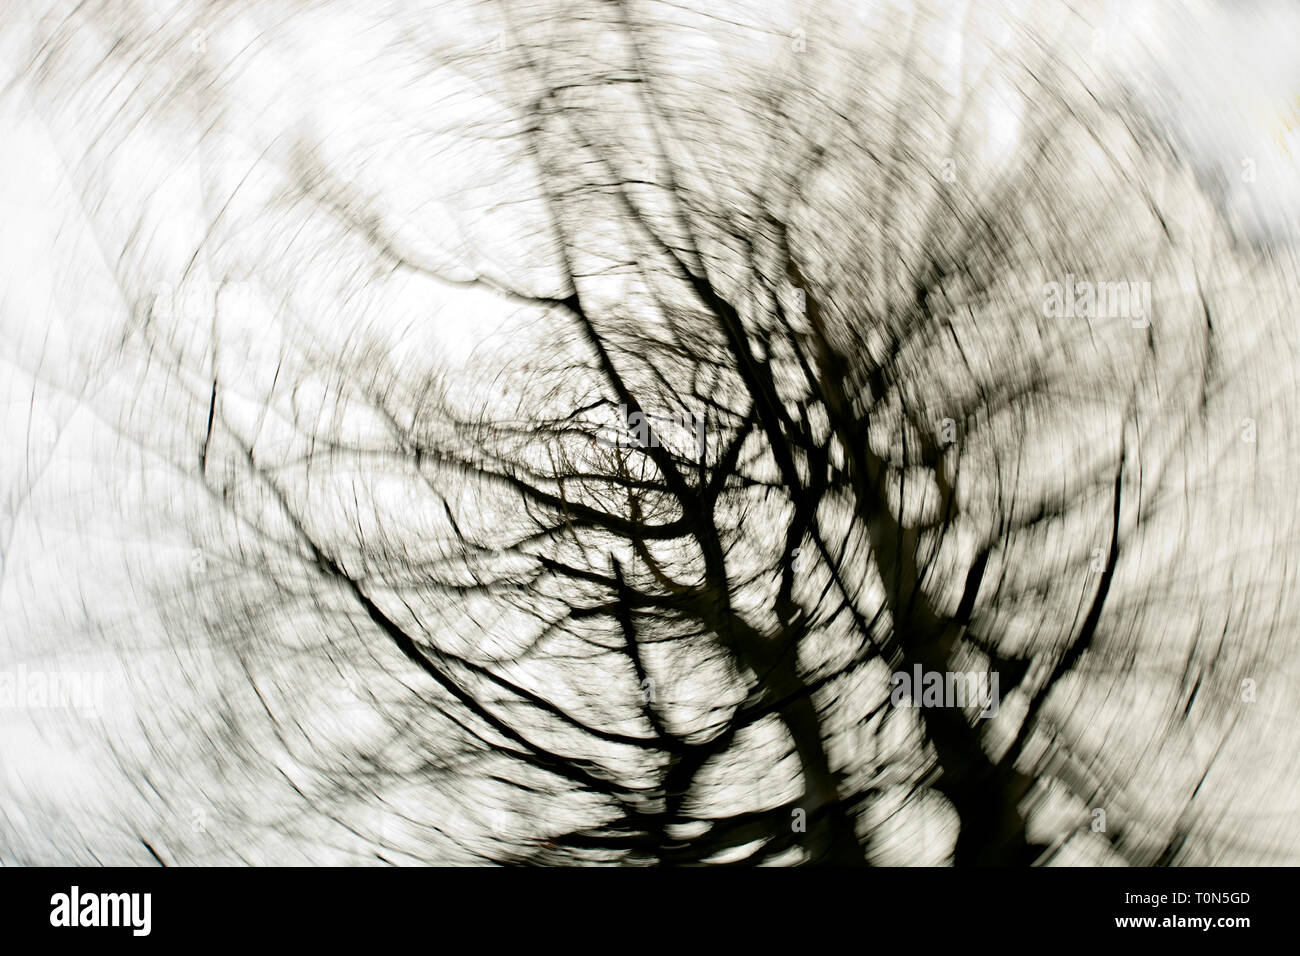 Europa, England, Wald von Dean. Blattlosen winter baum Abstract von unten mit wirbelnden Wirkung. Stockfoto